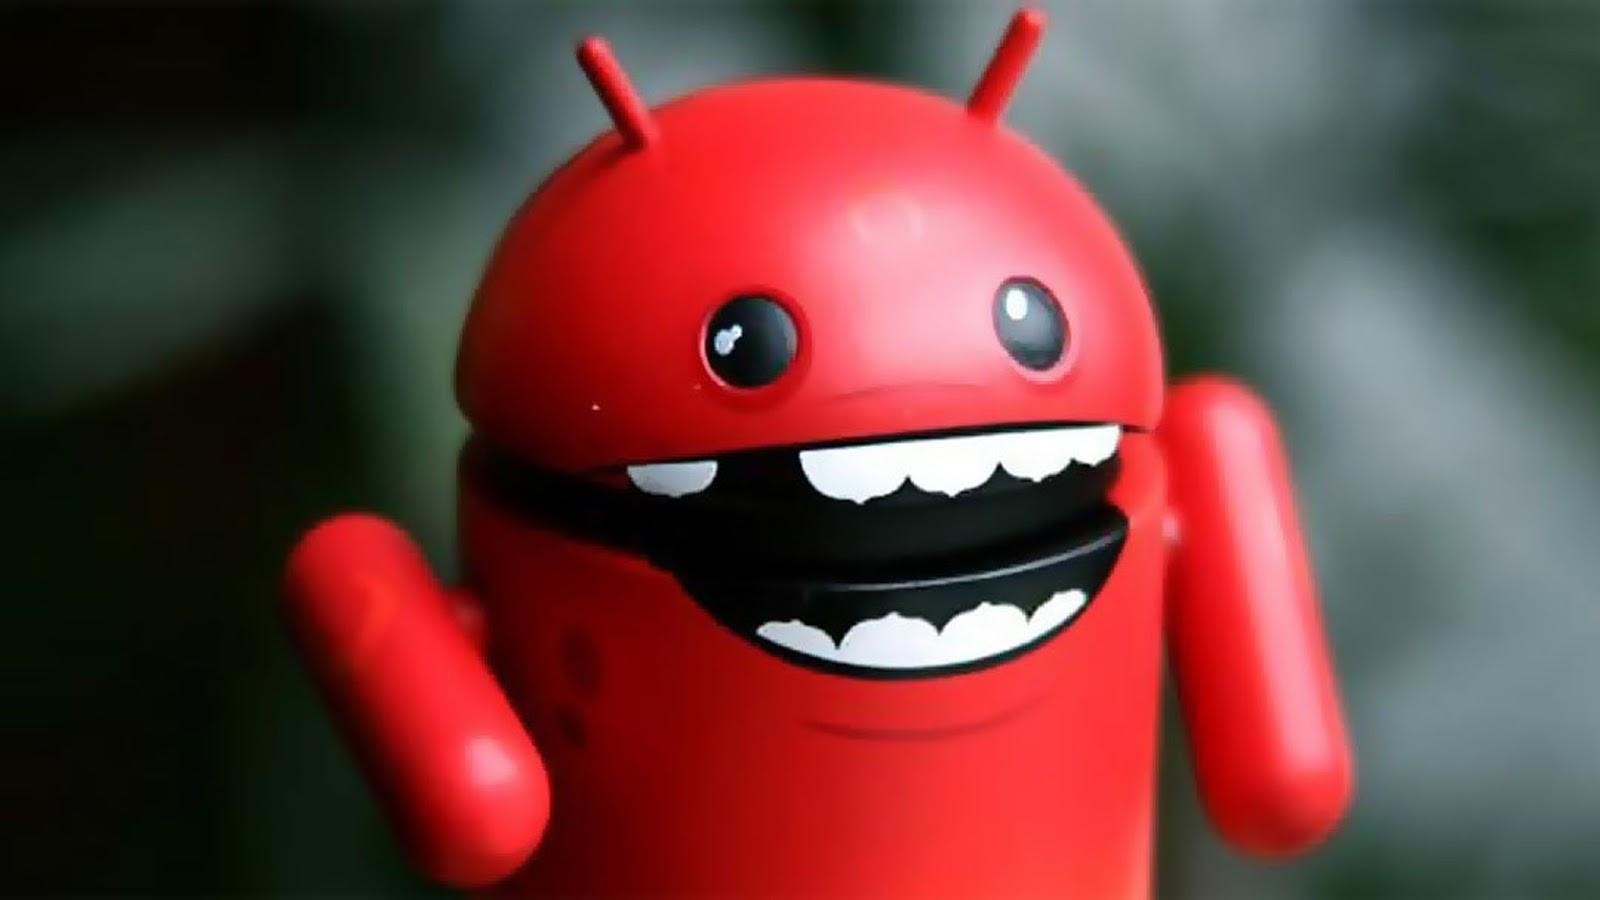 Bandeira vermelha: Google Play vai avisar quando o app for ruim